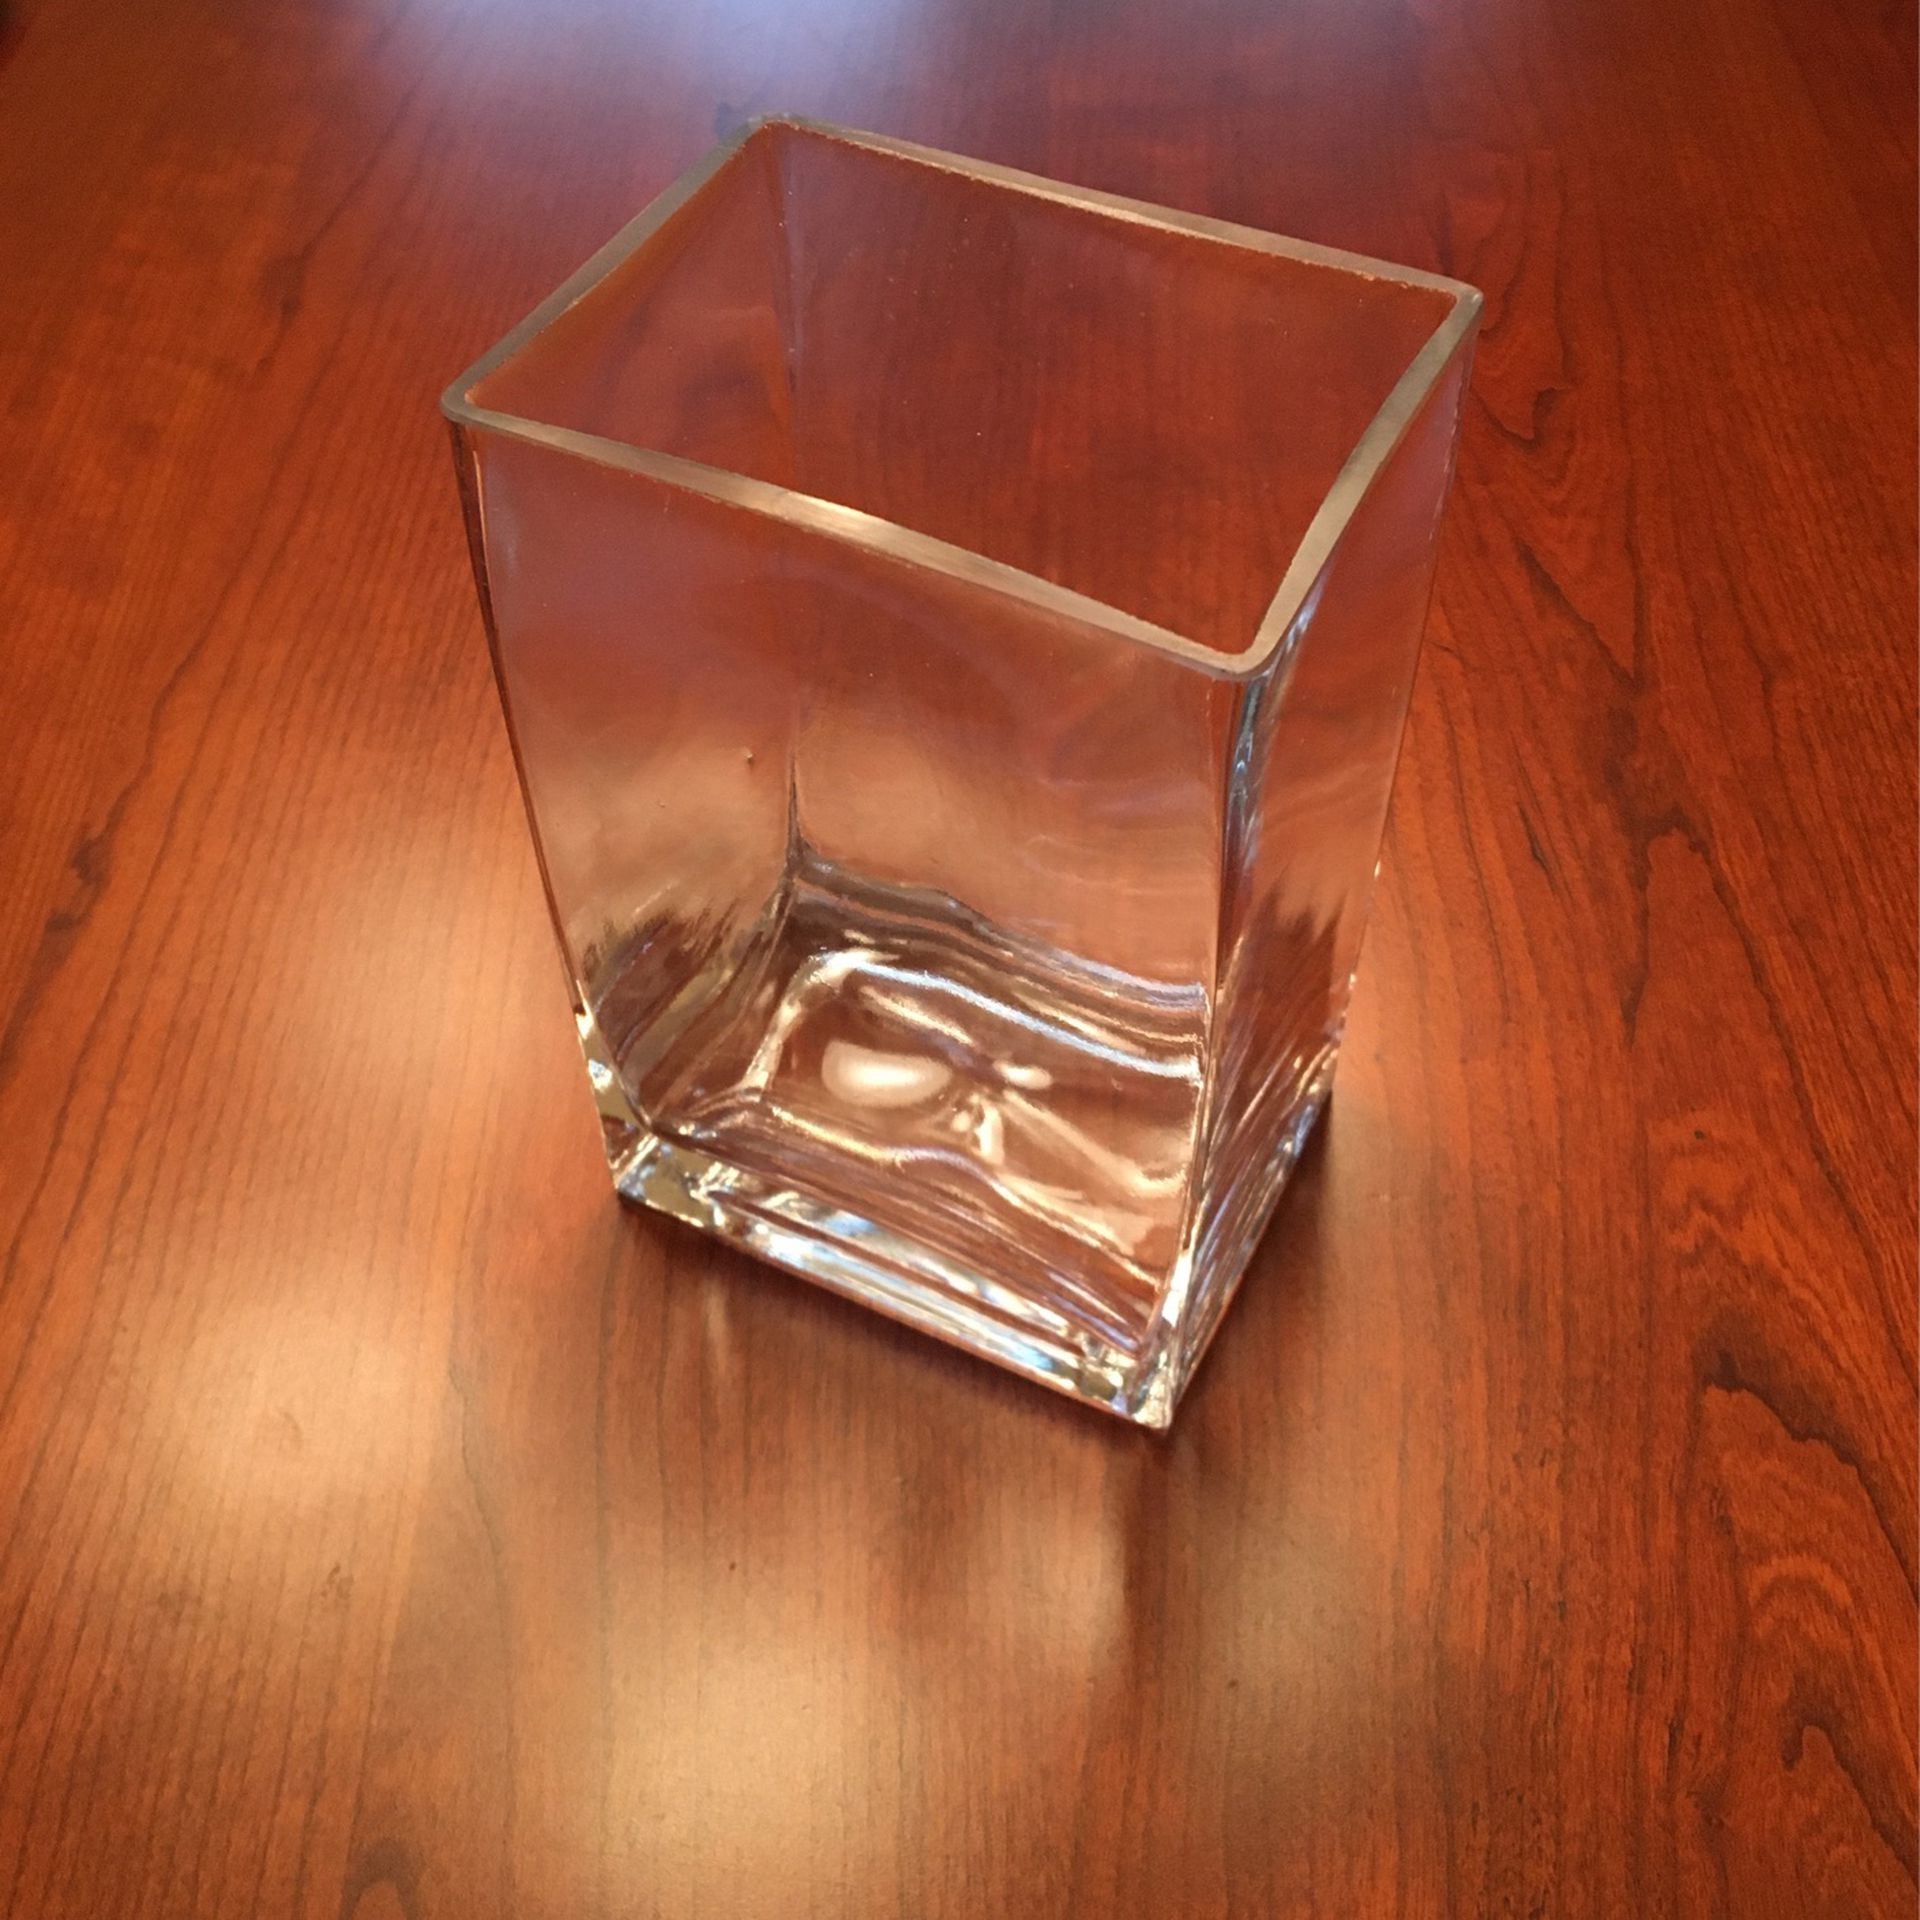 6” x 4” Rectangular Glass Flower Vase